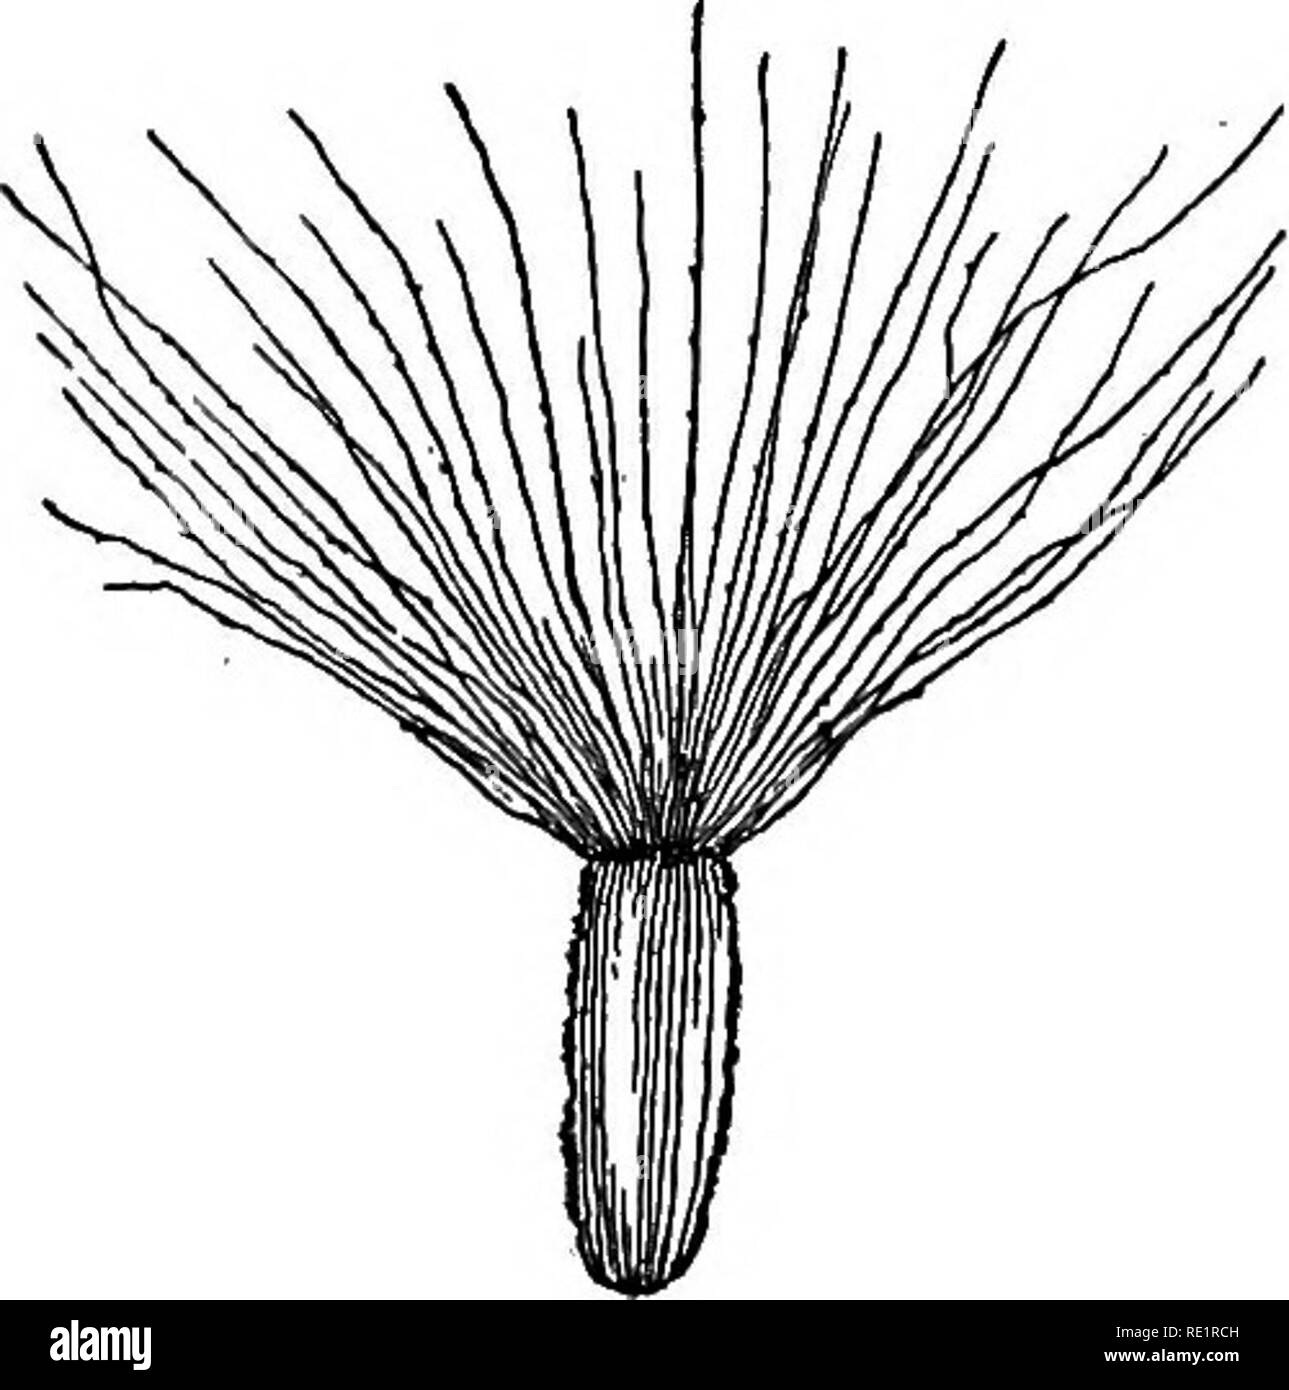 . Un manual de botánica de India. La botánica. La flor del 85 de pelos o cerdas, como en o kukshima kukur-Songa, así como un cáliz peludo es conocido como el vilano (fig. 81). Cuando el cáliz está insertado en el tálamo directamente, por lo que es el menor verticilos de una flor, se dice que es inferior con respecto al pistilo, que es la máxima verticilos y, por lo tanto, se dice que es superior. En algunos casos, que se explica más adelante, el cáliz parece crecer desde la parte superior del pistilo, cuando se dice que es superior en el respeto del pistilo, que en ese caso es inferior. En algunas flores, como en el caso de Jaba y algodón (véase Foto de stock